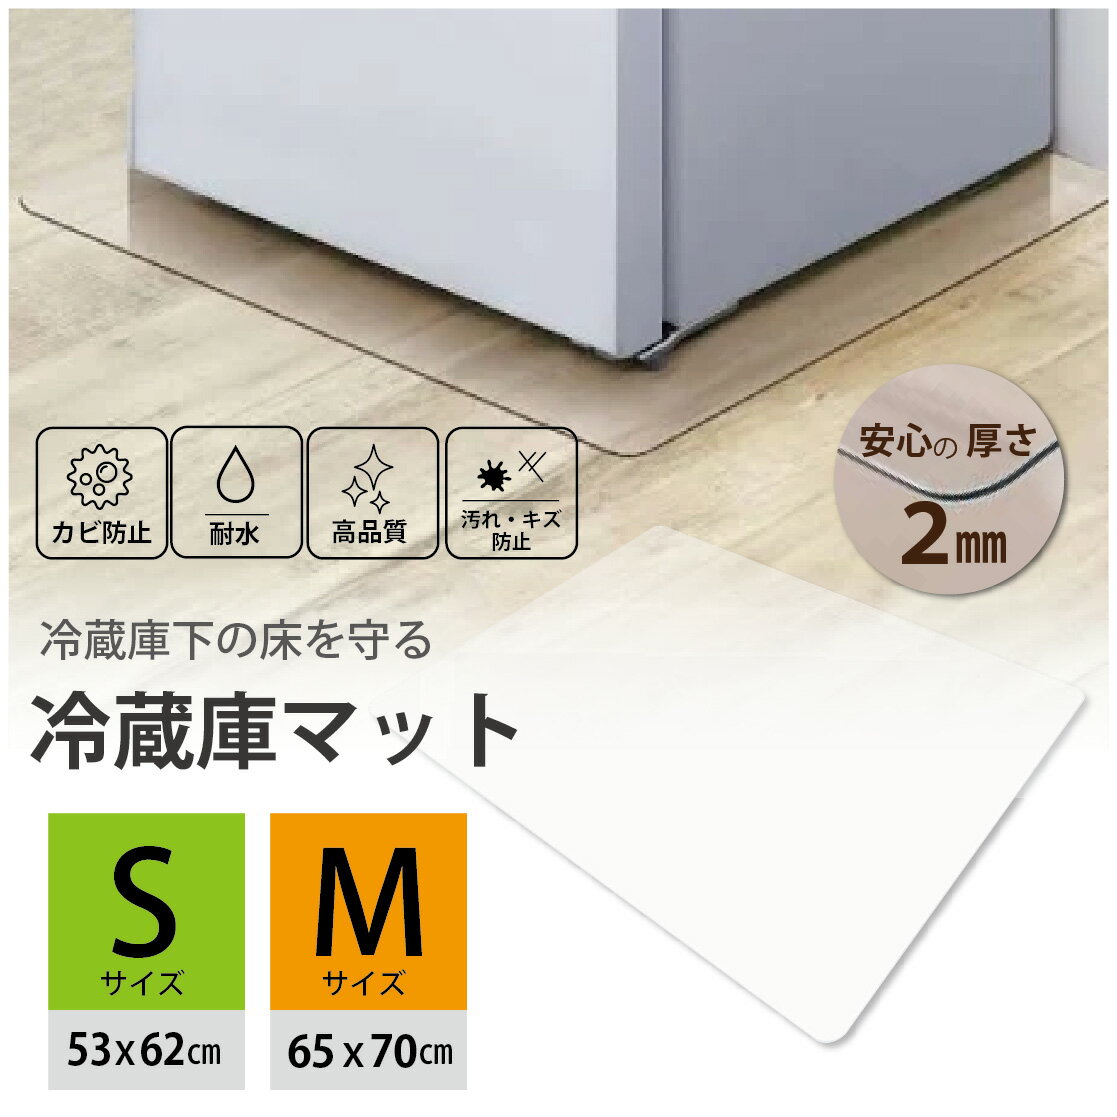 冷蔵庫 マット 透明 シート へこみ 防止 ポリカ カットも出来る Mサイズ 65cm x 70cm 送料無料